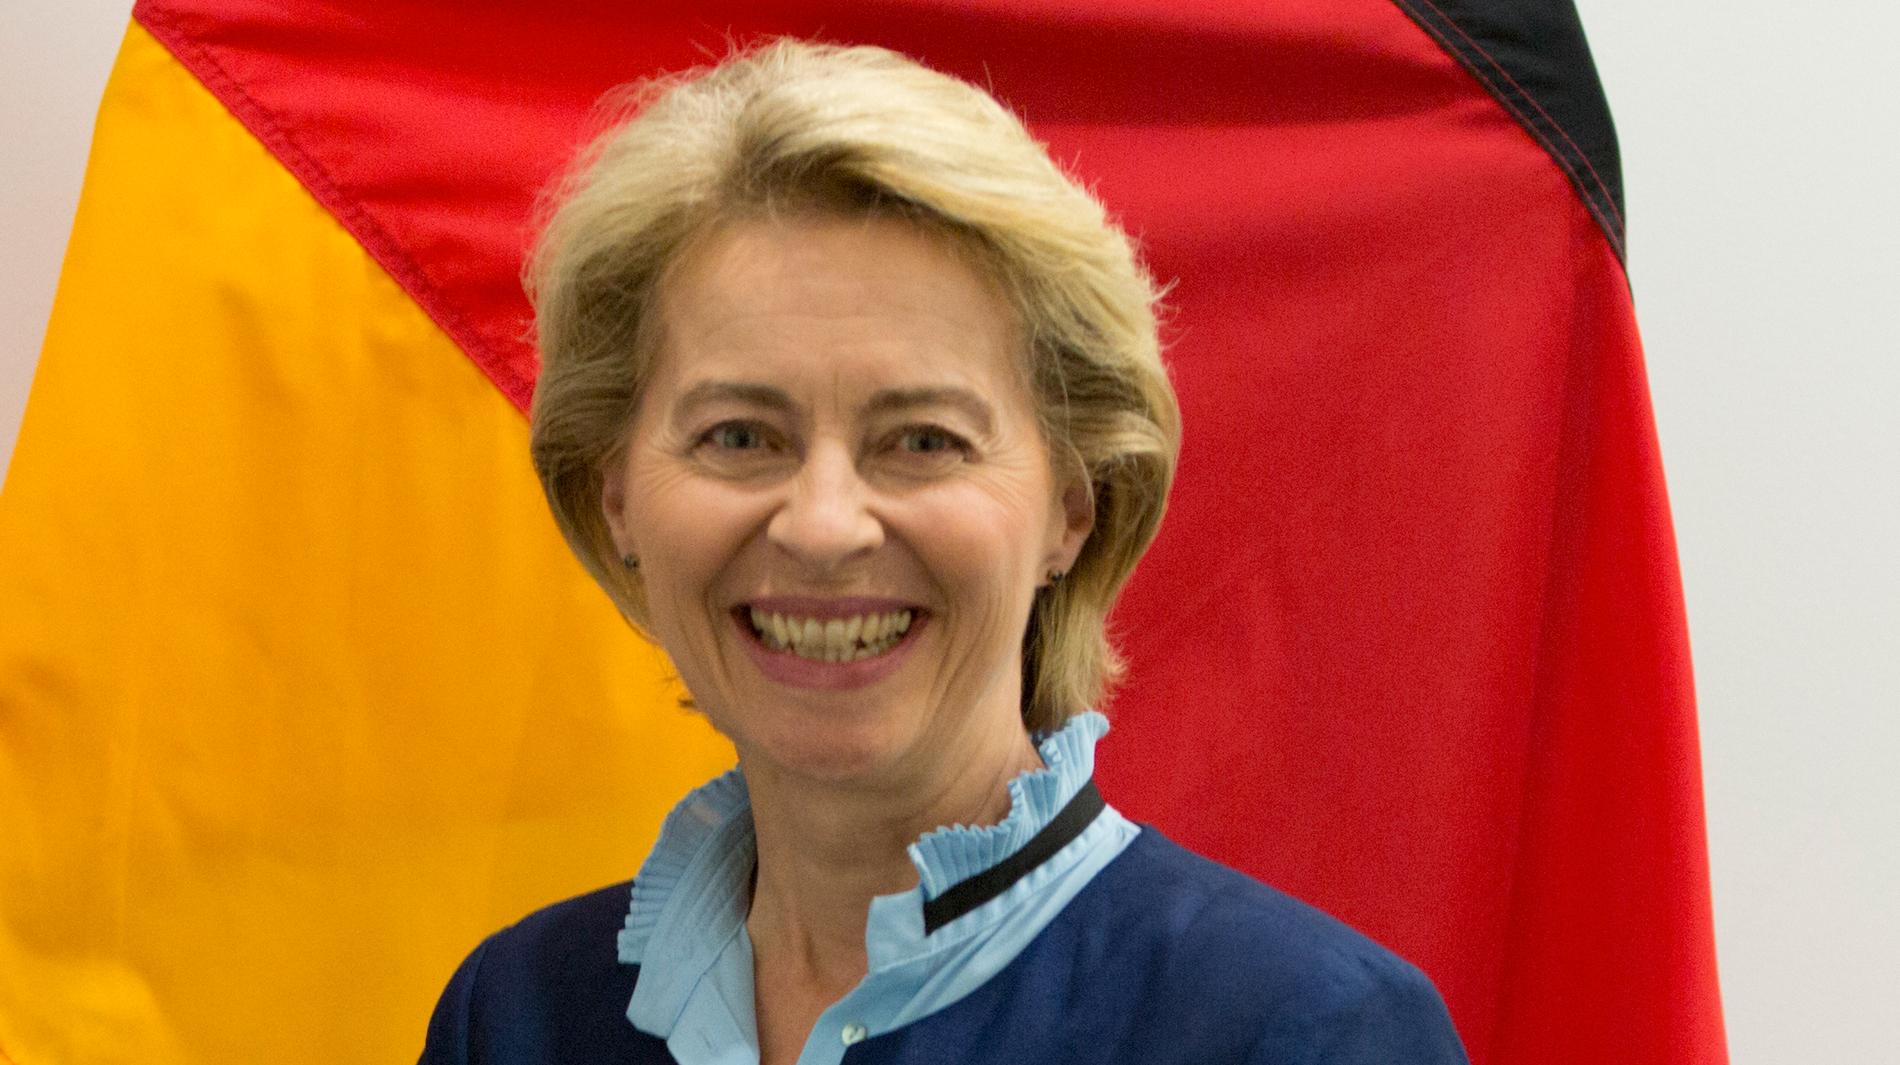 Tysklands nuvarande försvarsminister Ursula von der Leyen föreslås bli ny ordförande i EU-kommissionen. Arkivbild.